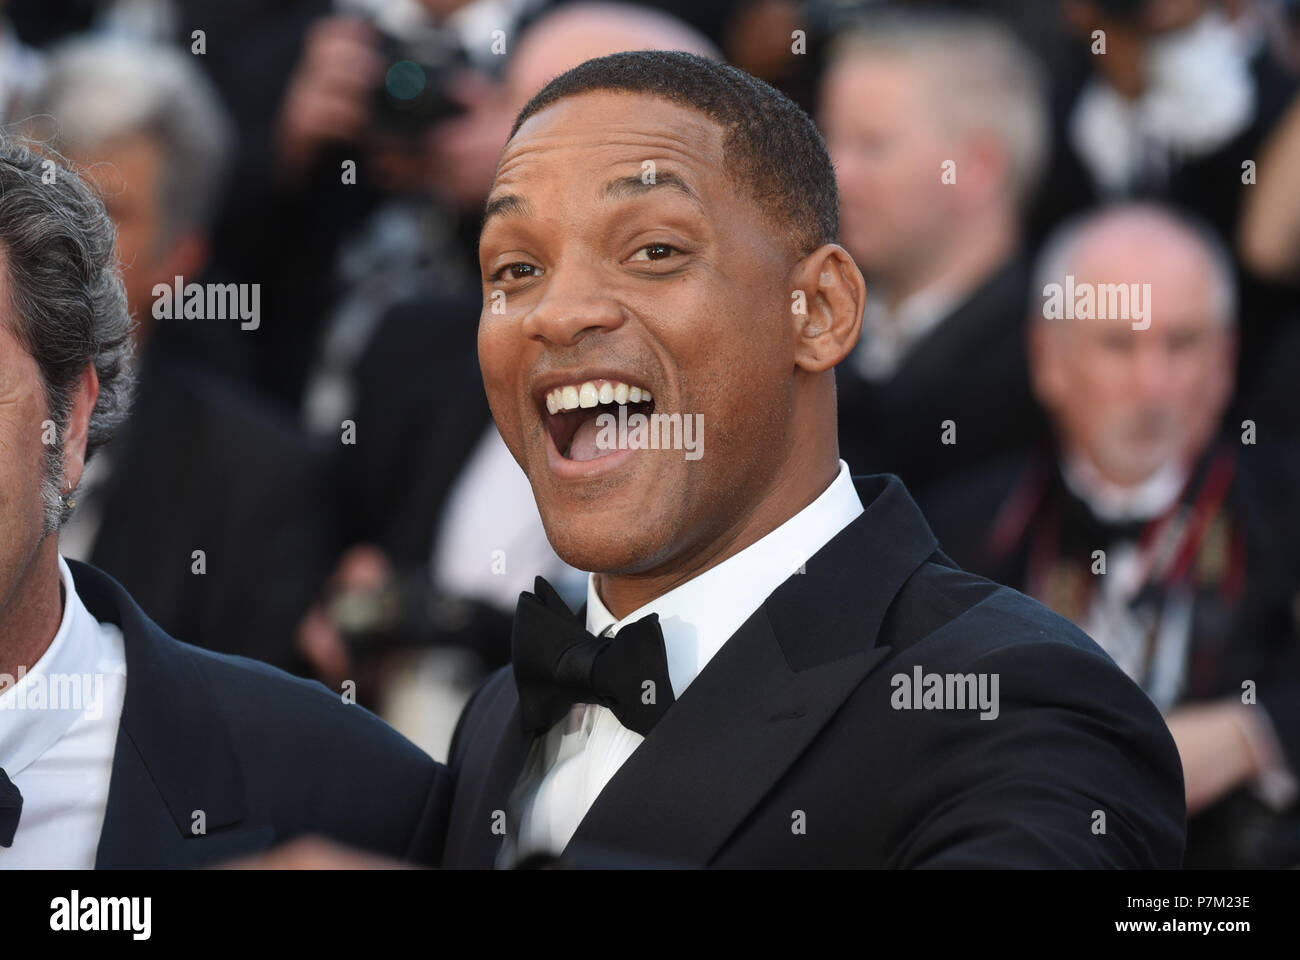 17 maggio 2017 - Parigi, Francia: Will Smith assiste il "Ismael i fantasmi' premiere durante il settantesimo Cannes film festival. Will Smith Lors du 70eme Festival de Cannes. *** La Francia / NESSUNA VENDITA A MEDIA FRANCESI *** Foto Stock